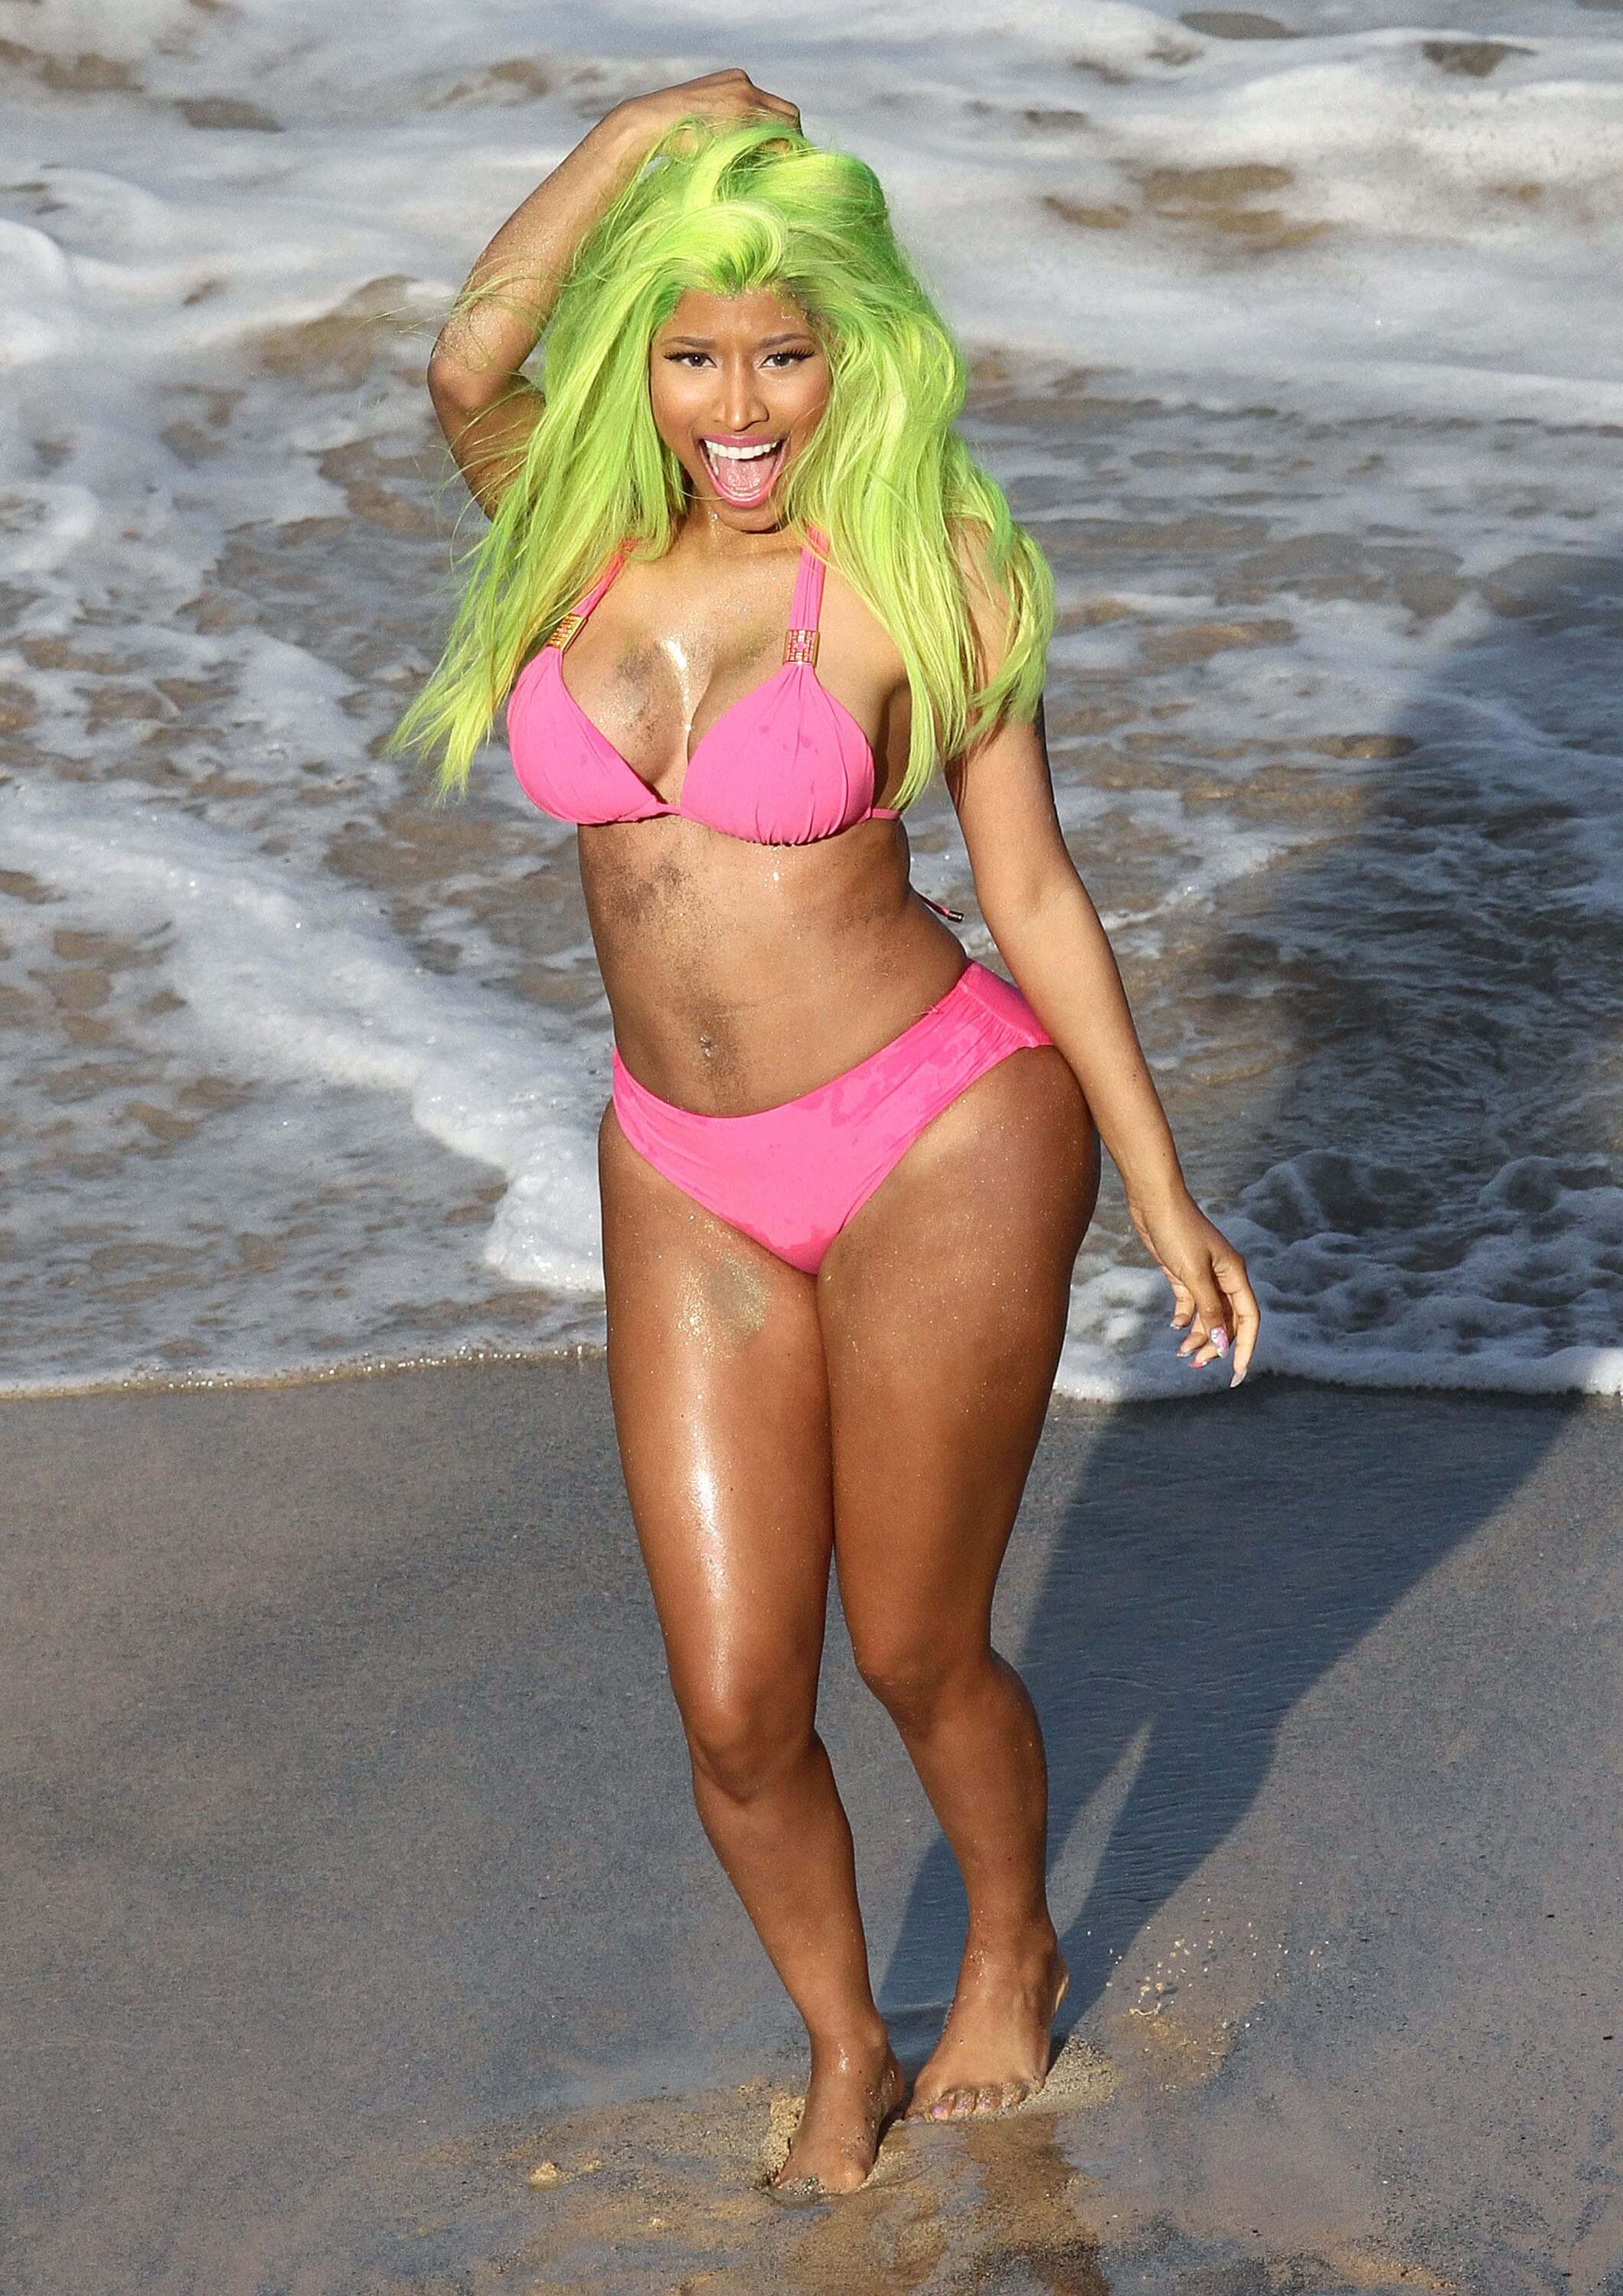 The Hottest Nicki Minaj Photos.